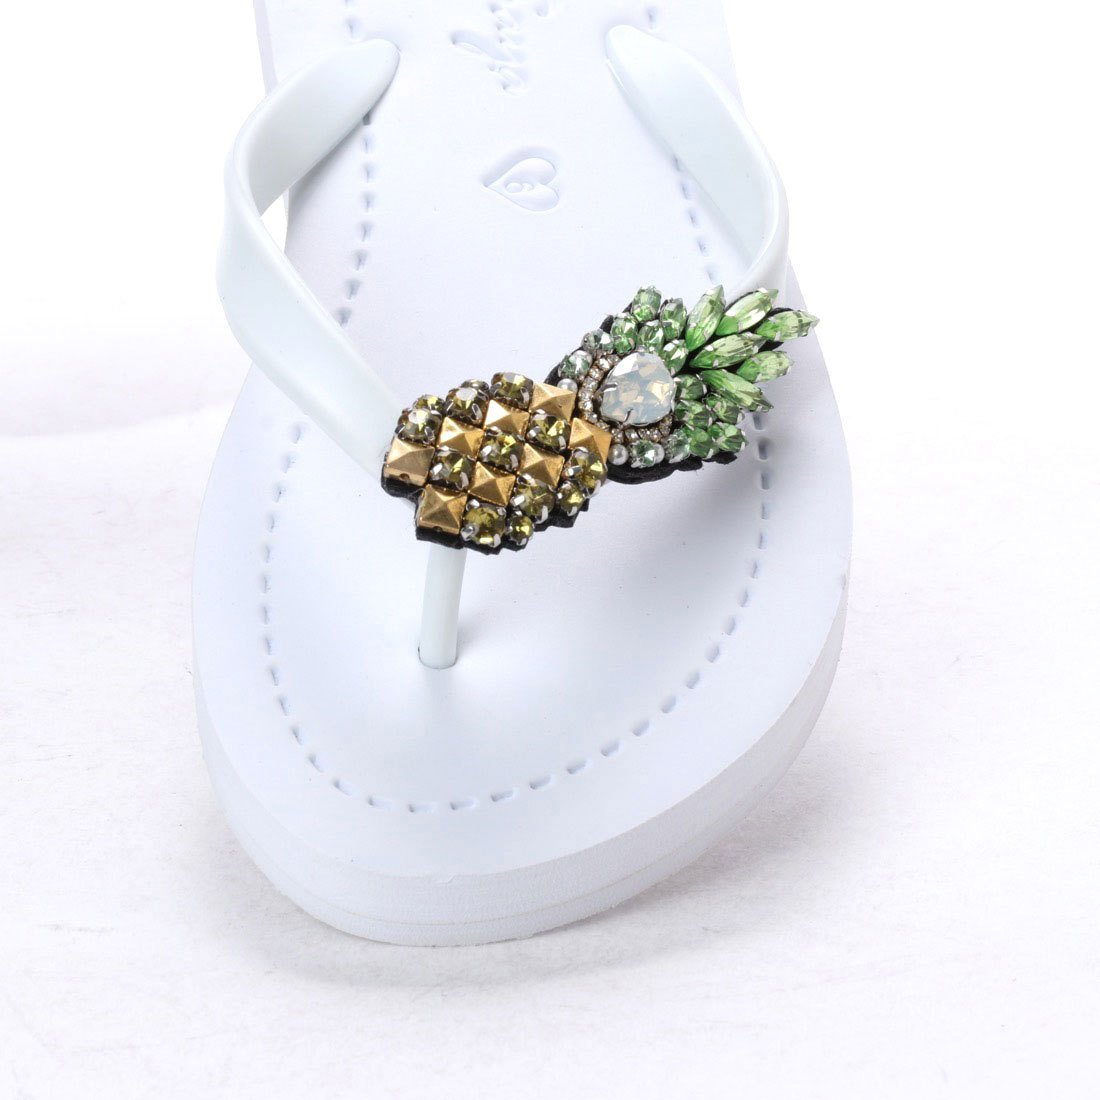 【JP】Pineapple - Women's Flat Sandal-Japan Stock【日本限定】